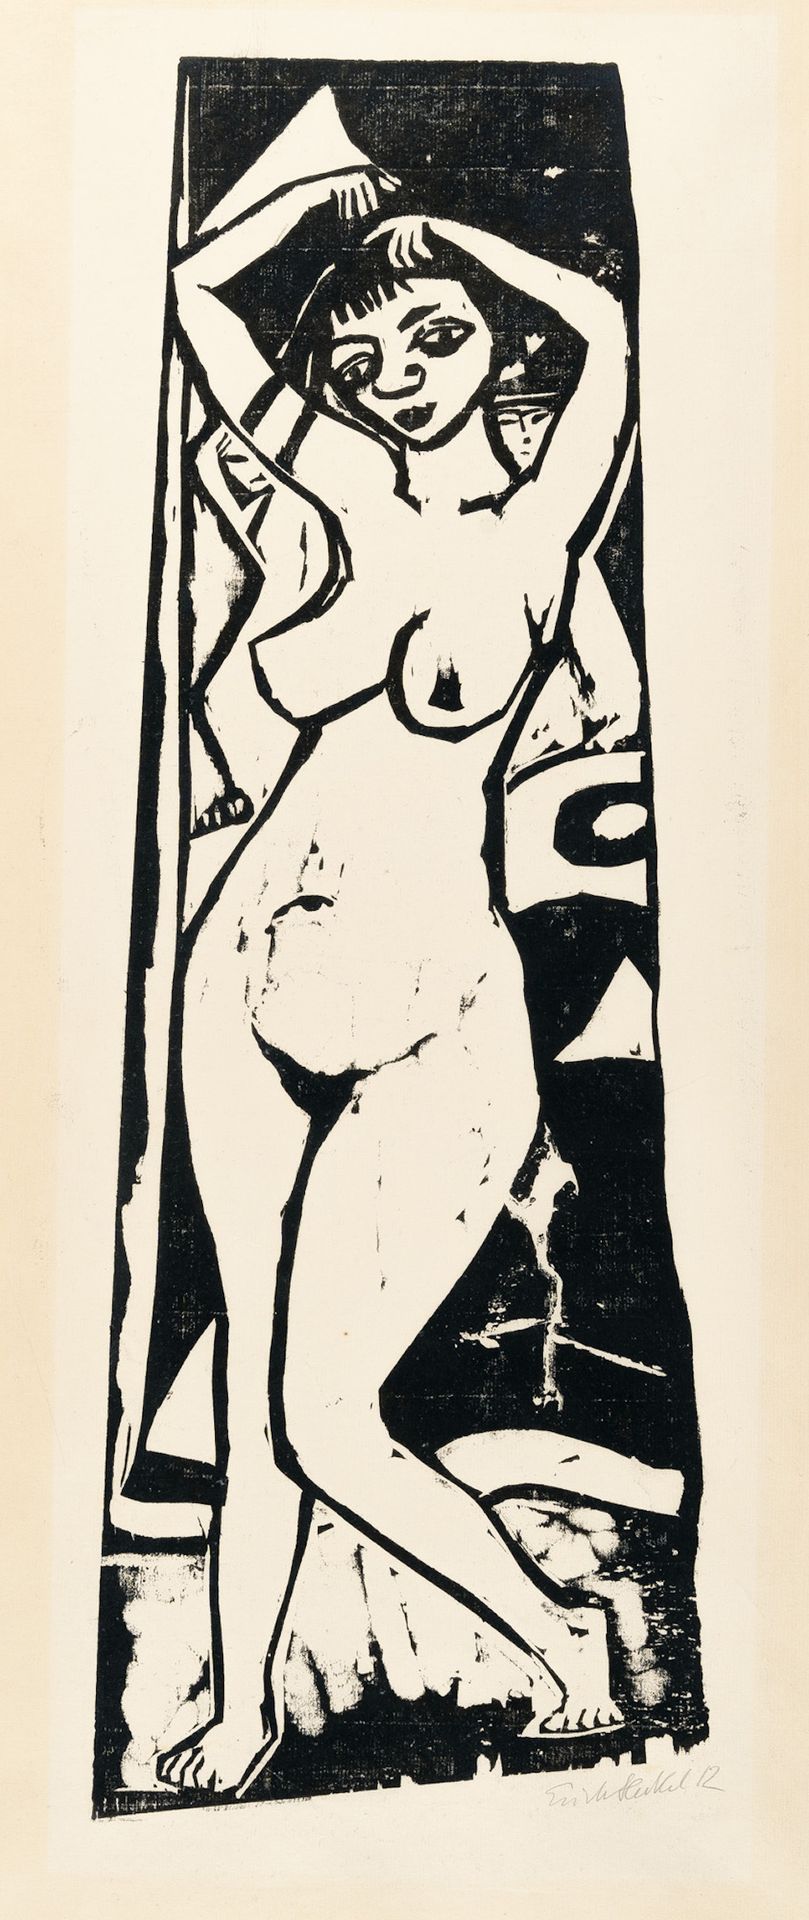 Erich Heckel Erich Heckel, “Stehende“ (Nude/Standing Nude).

Woodcut on smooth, &hellip;